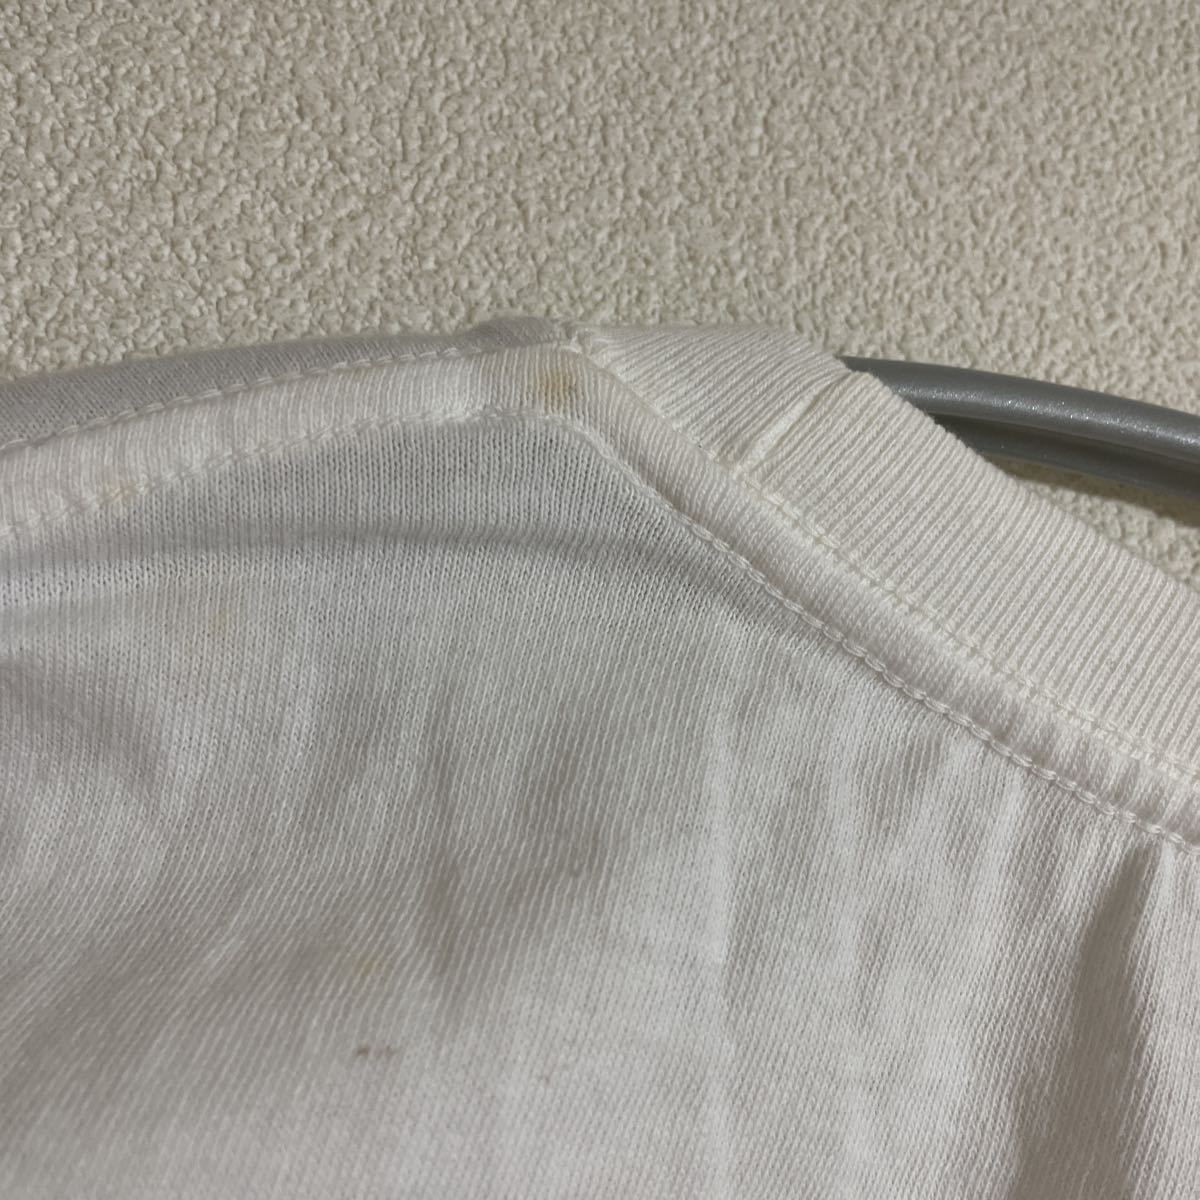 難有新品 長袖Tシャツ トップス M ホワイト白 未使用 インナー 綿100% コットン 無地_画像9